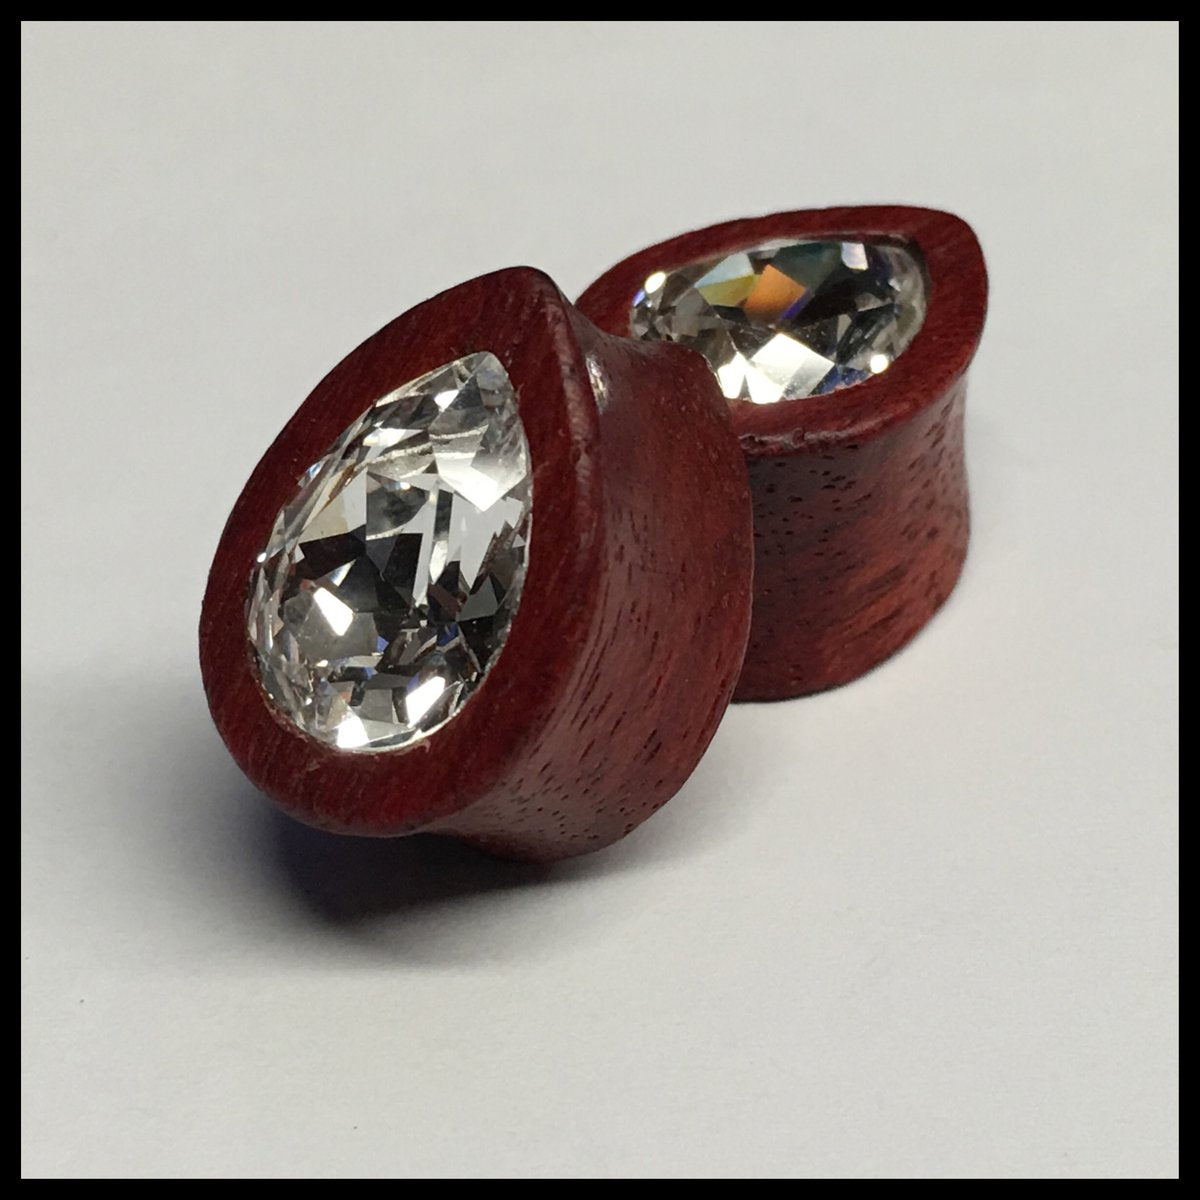 Bloodwood Small Swarovski Crystal Teardrop Plugs